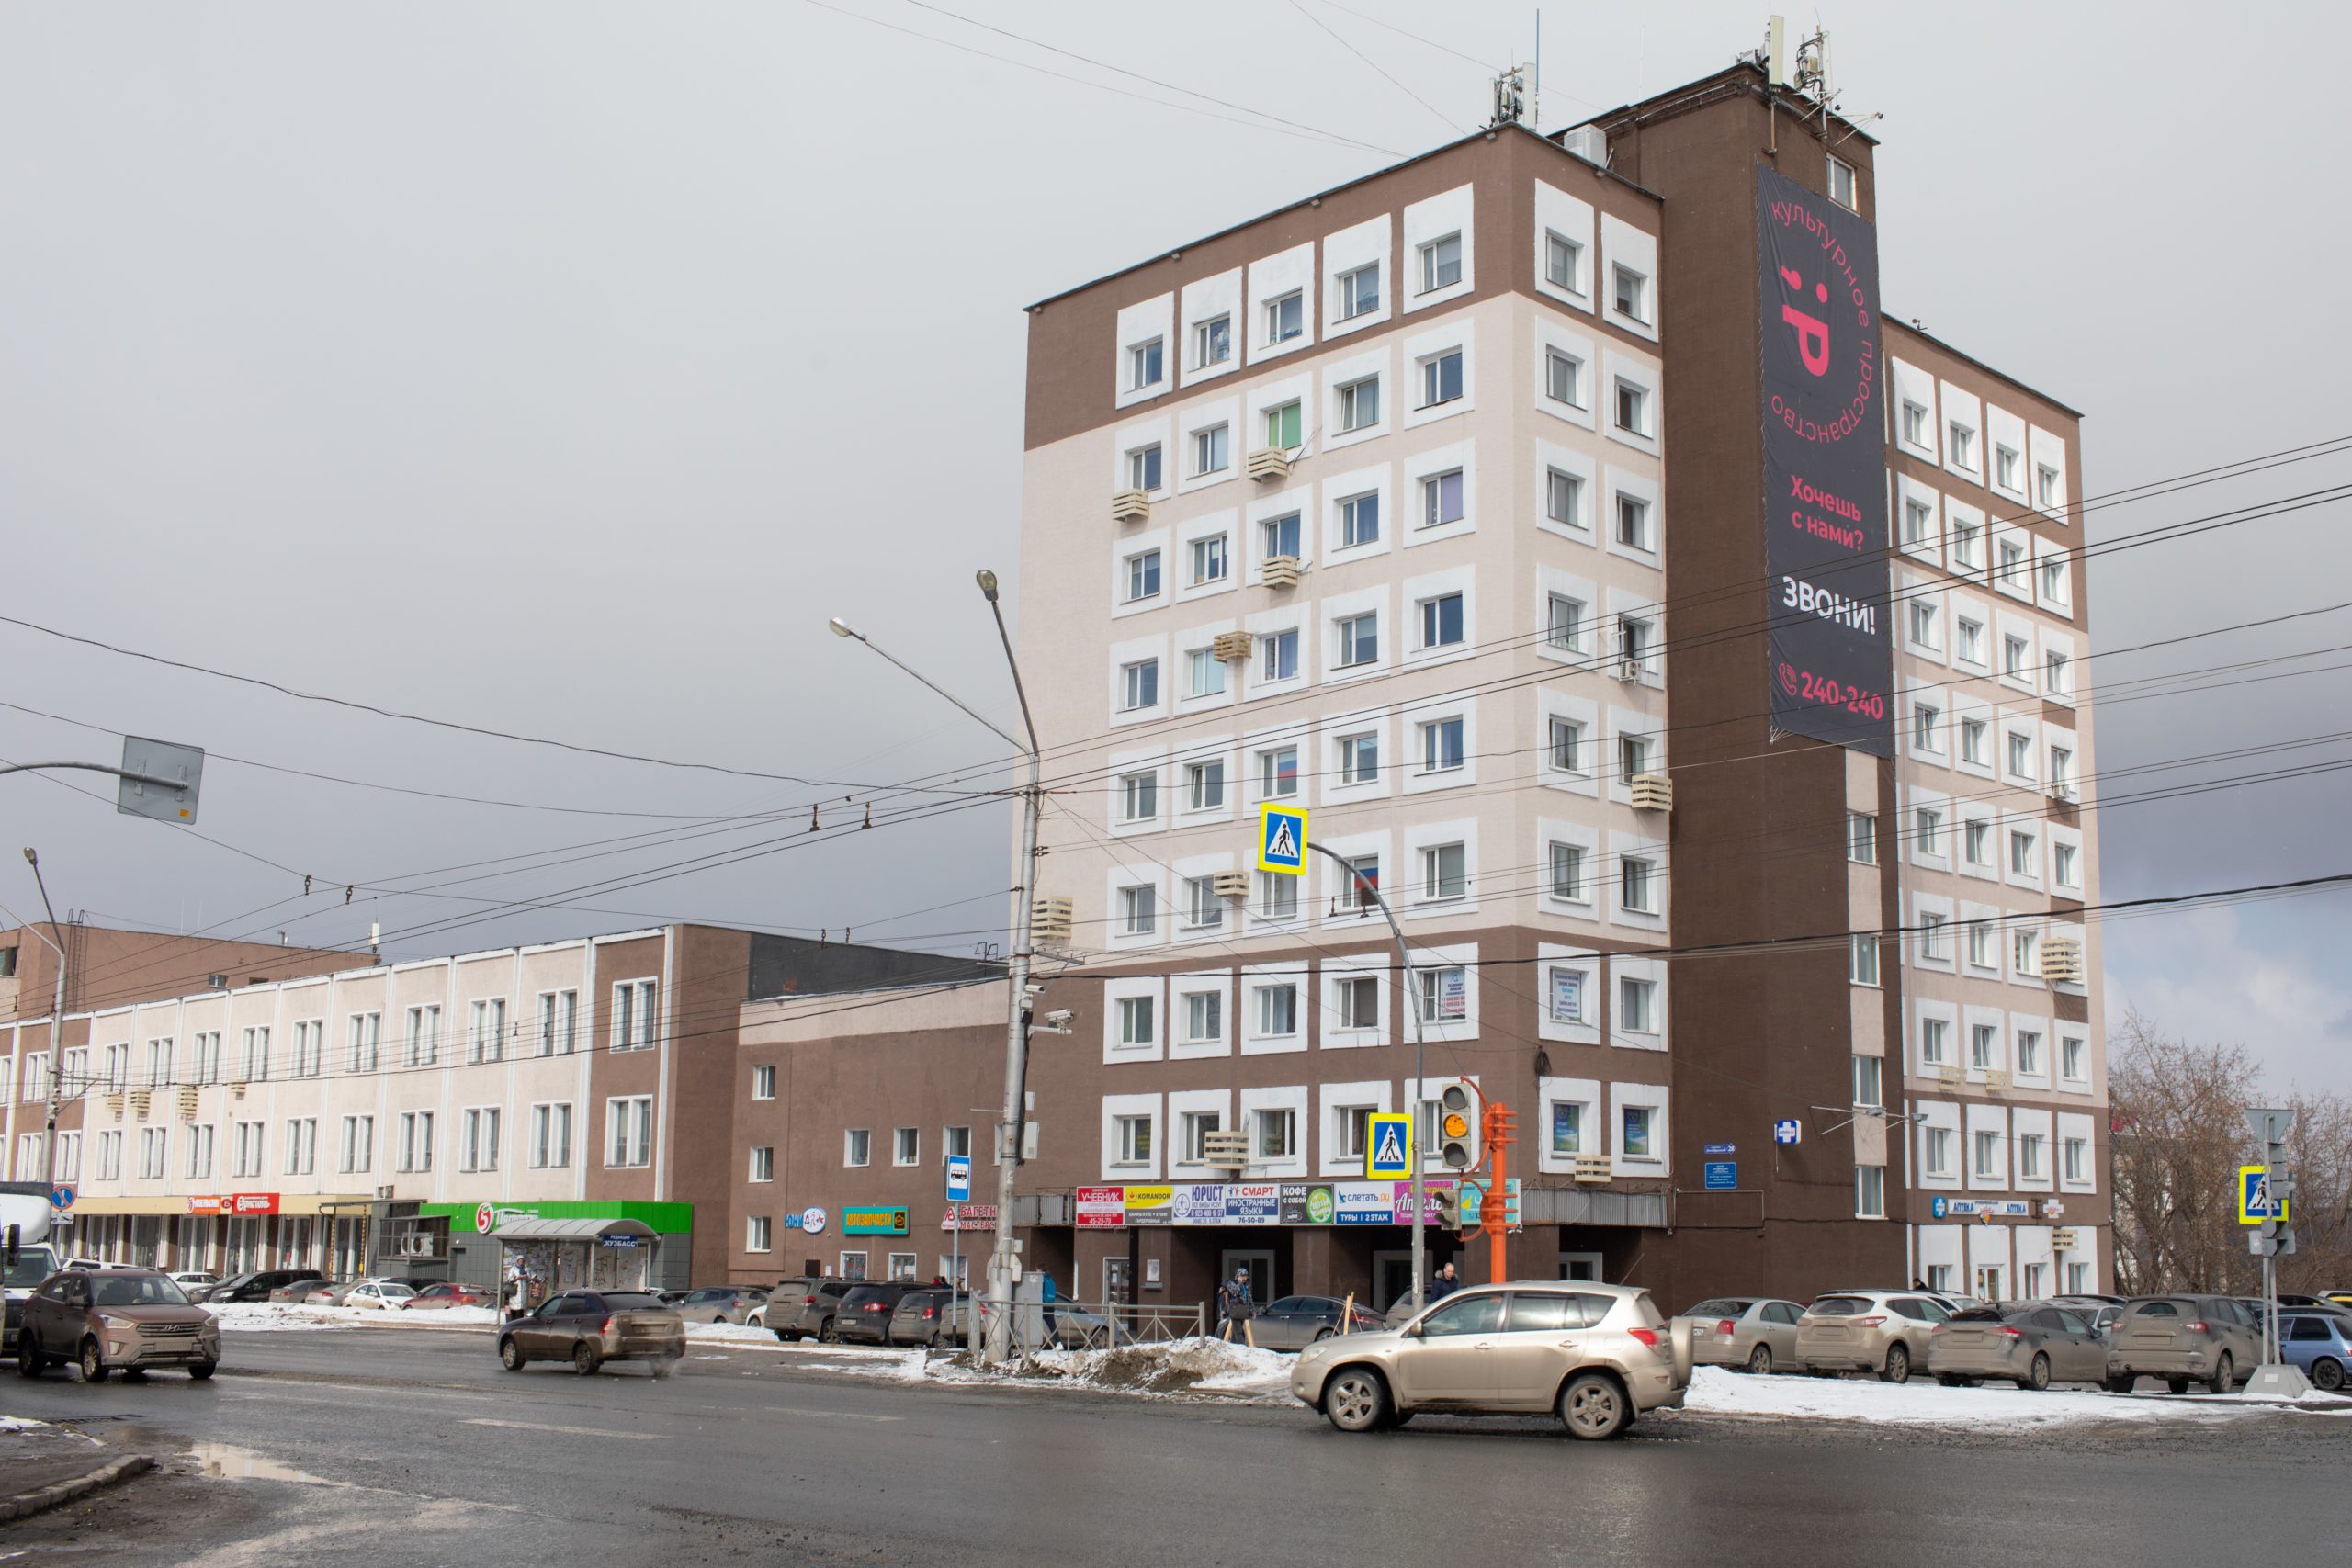 Суд запретил эксплуатацию здания «Редакции» в Кемерове  